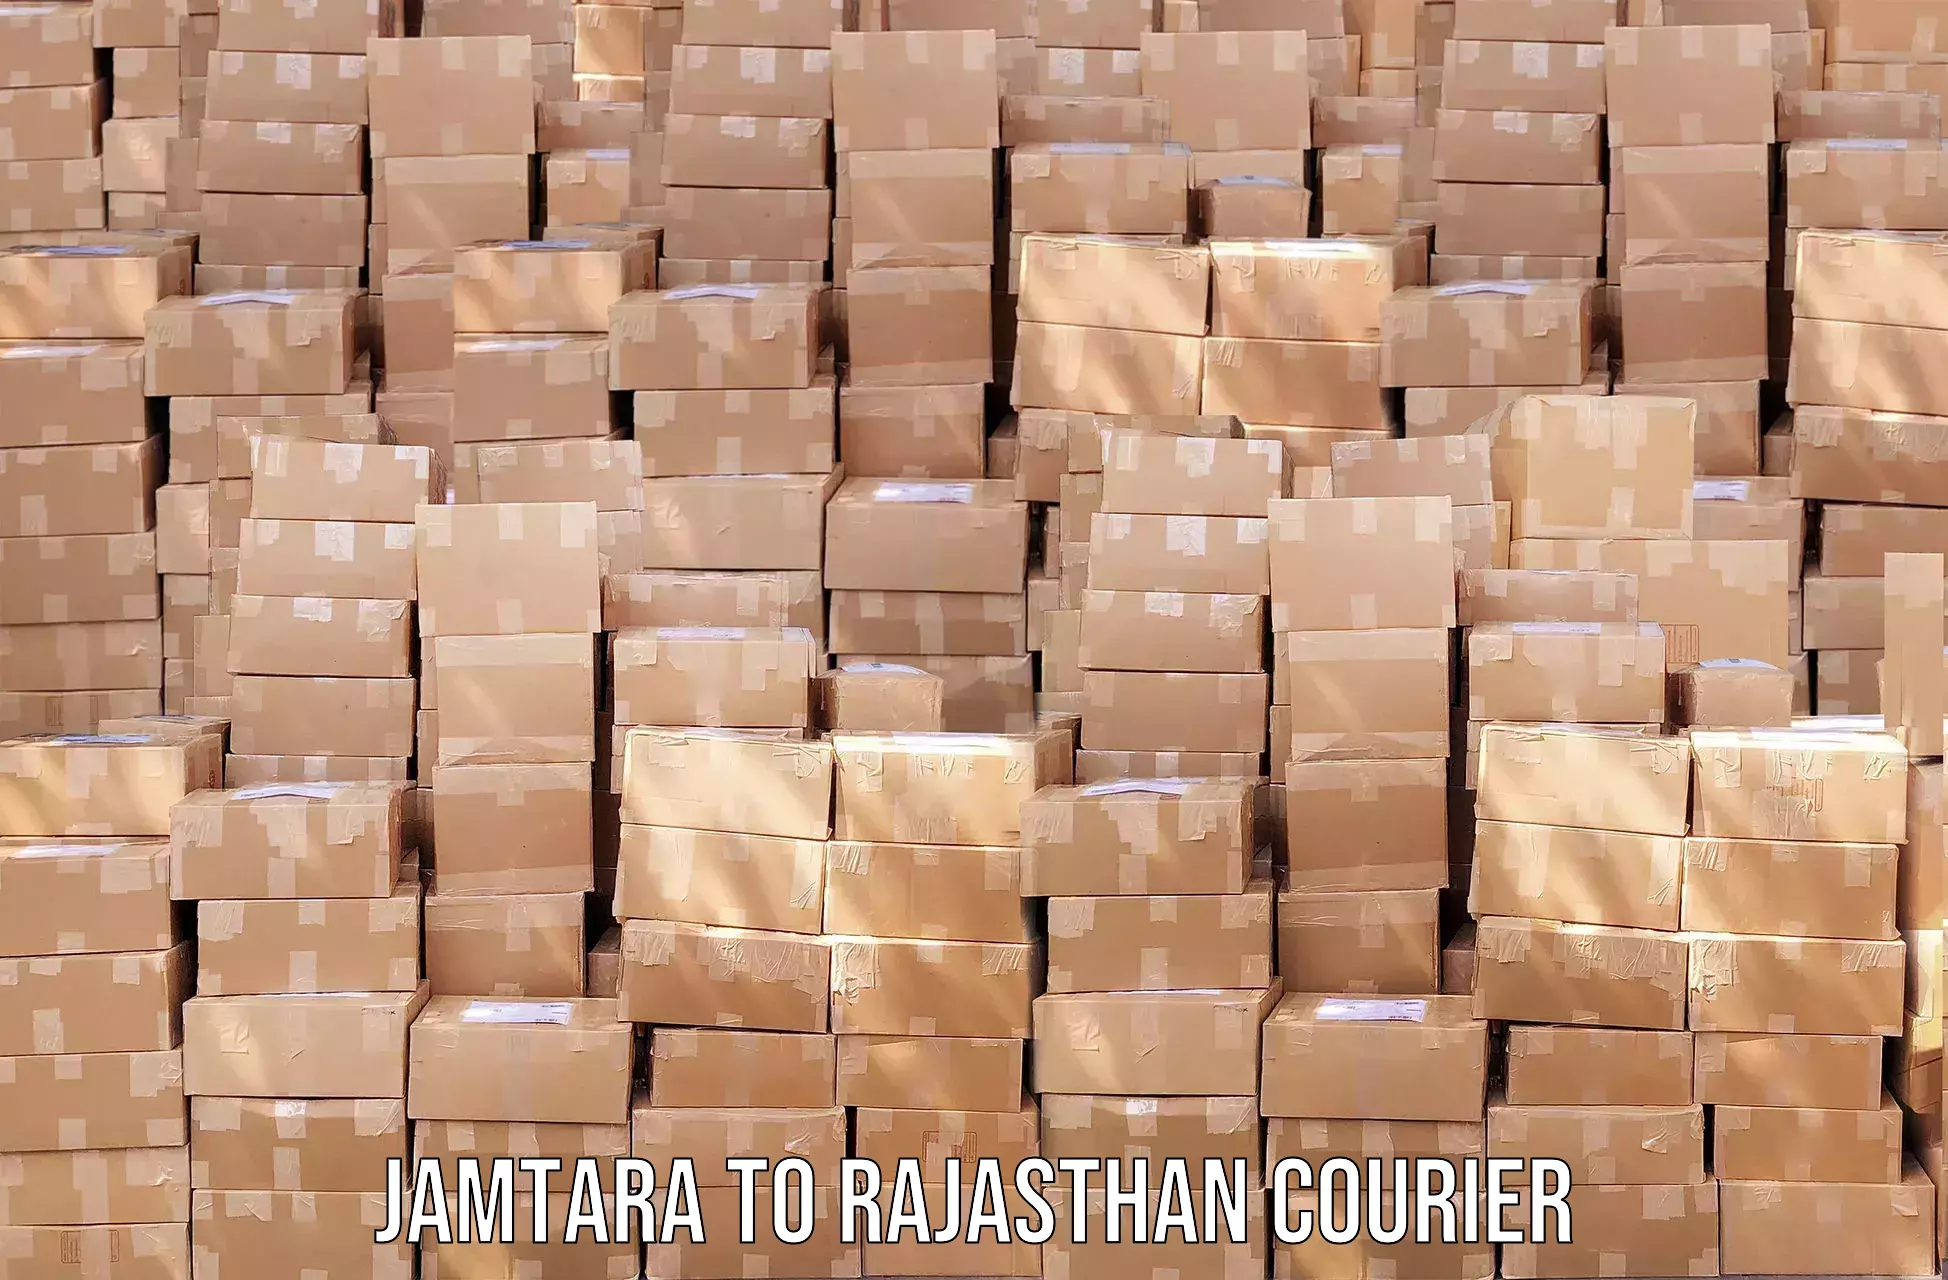 Weekend courier service in Jamtara to Jaisalmer